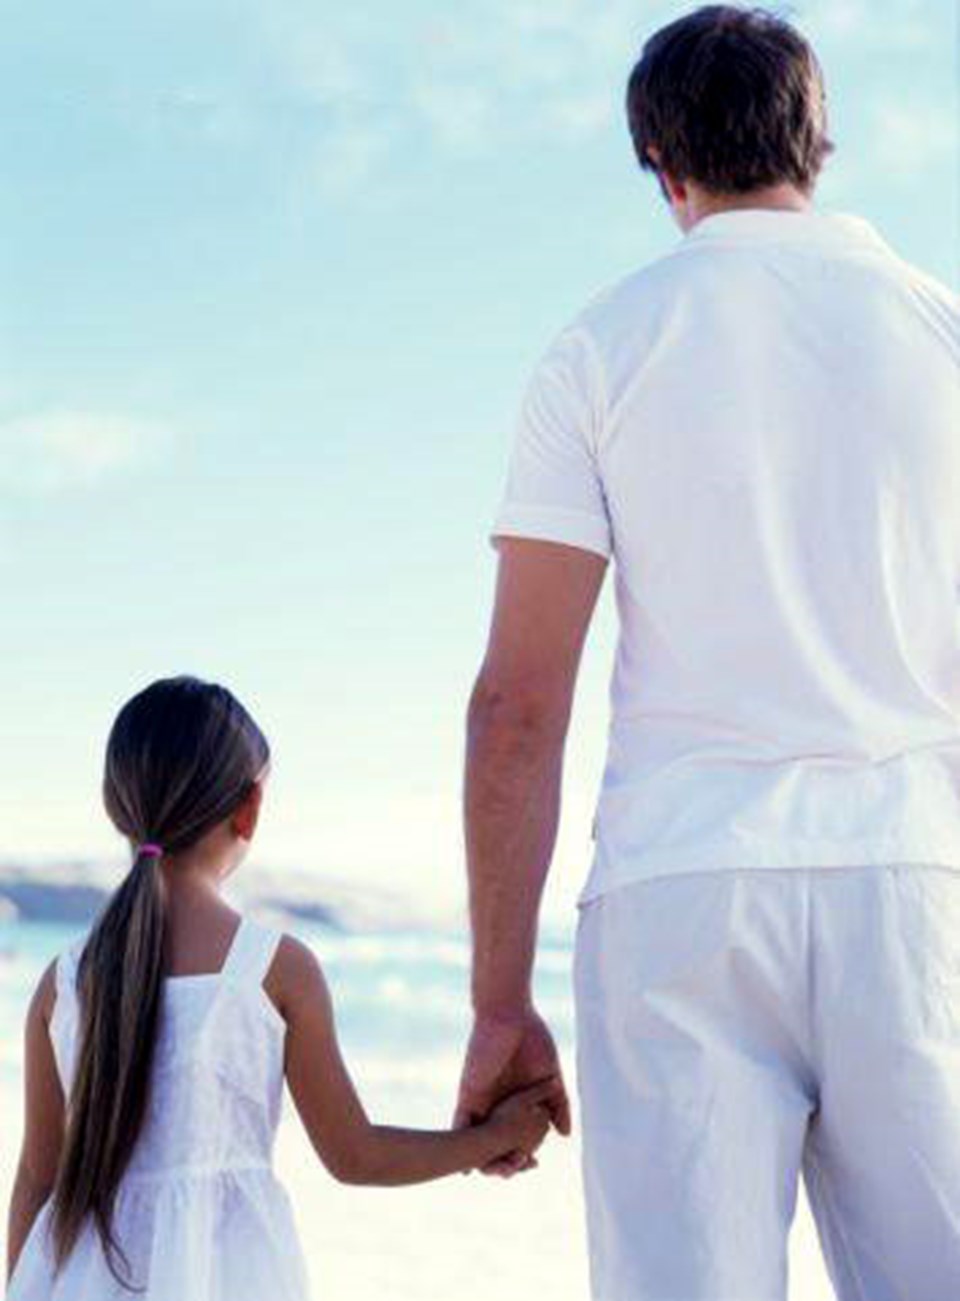 Папа стоящую дочку. Отец и дочь. Отец и дочь со спины. Отец и дочь идут за руку.